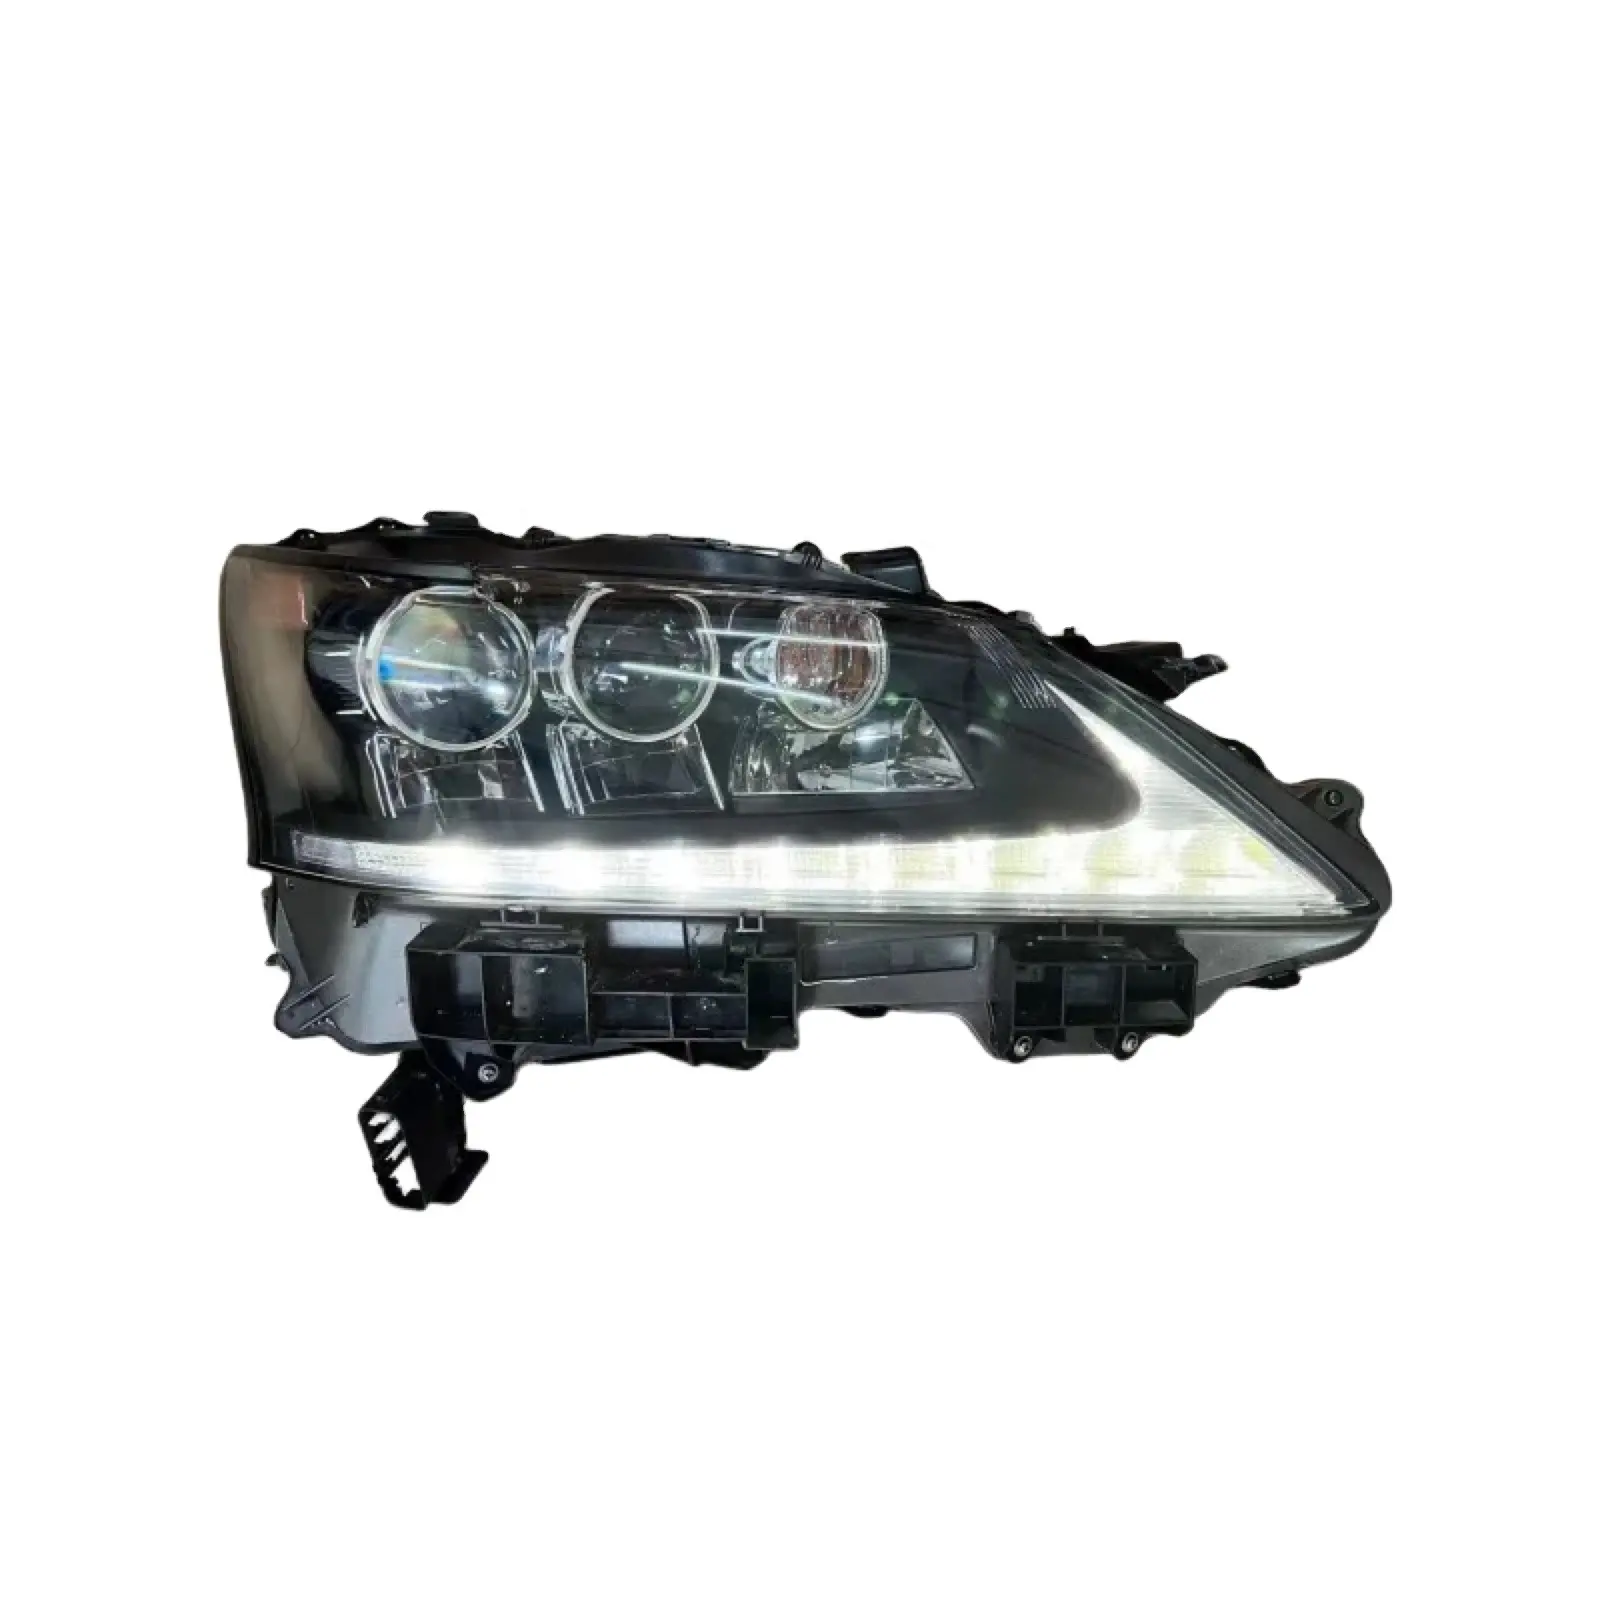 Mới nóng bán 2012 2013 2014 xe đèn pha LED GS350 GS250 gs300h GS450h Led Đèn Pha HID Xenon đèn pha cho Lexus